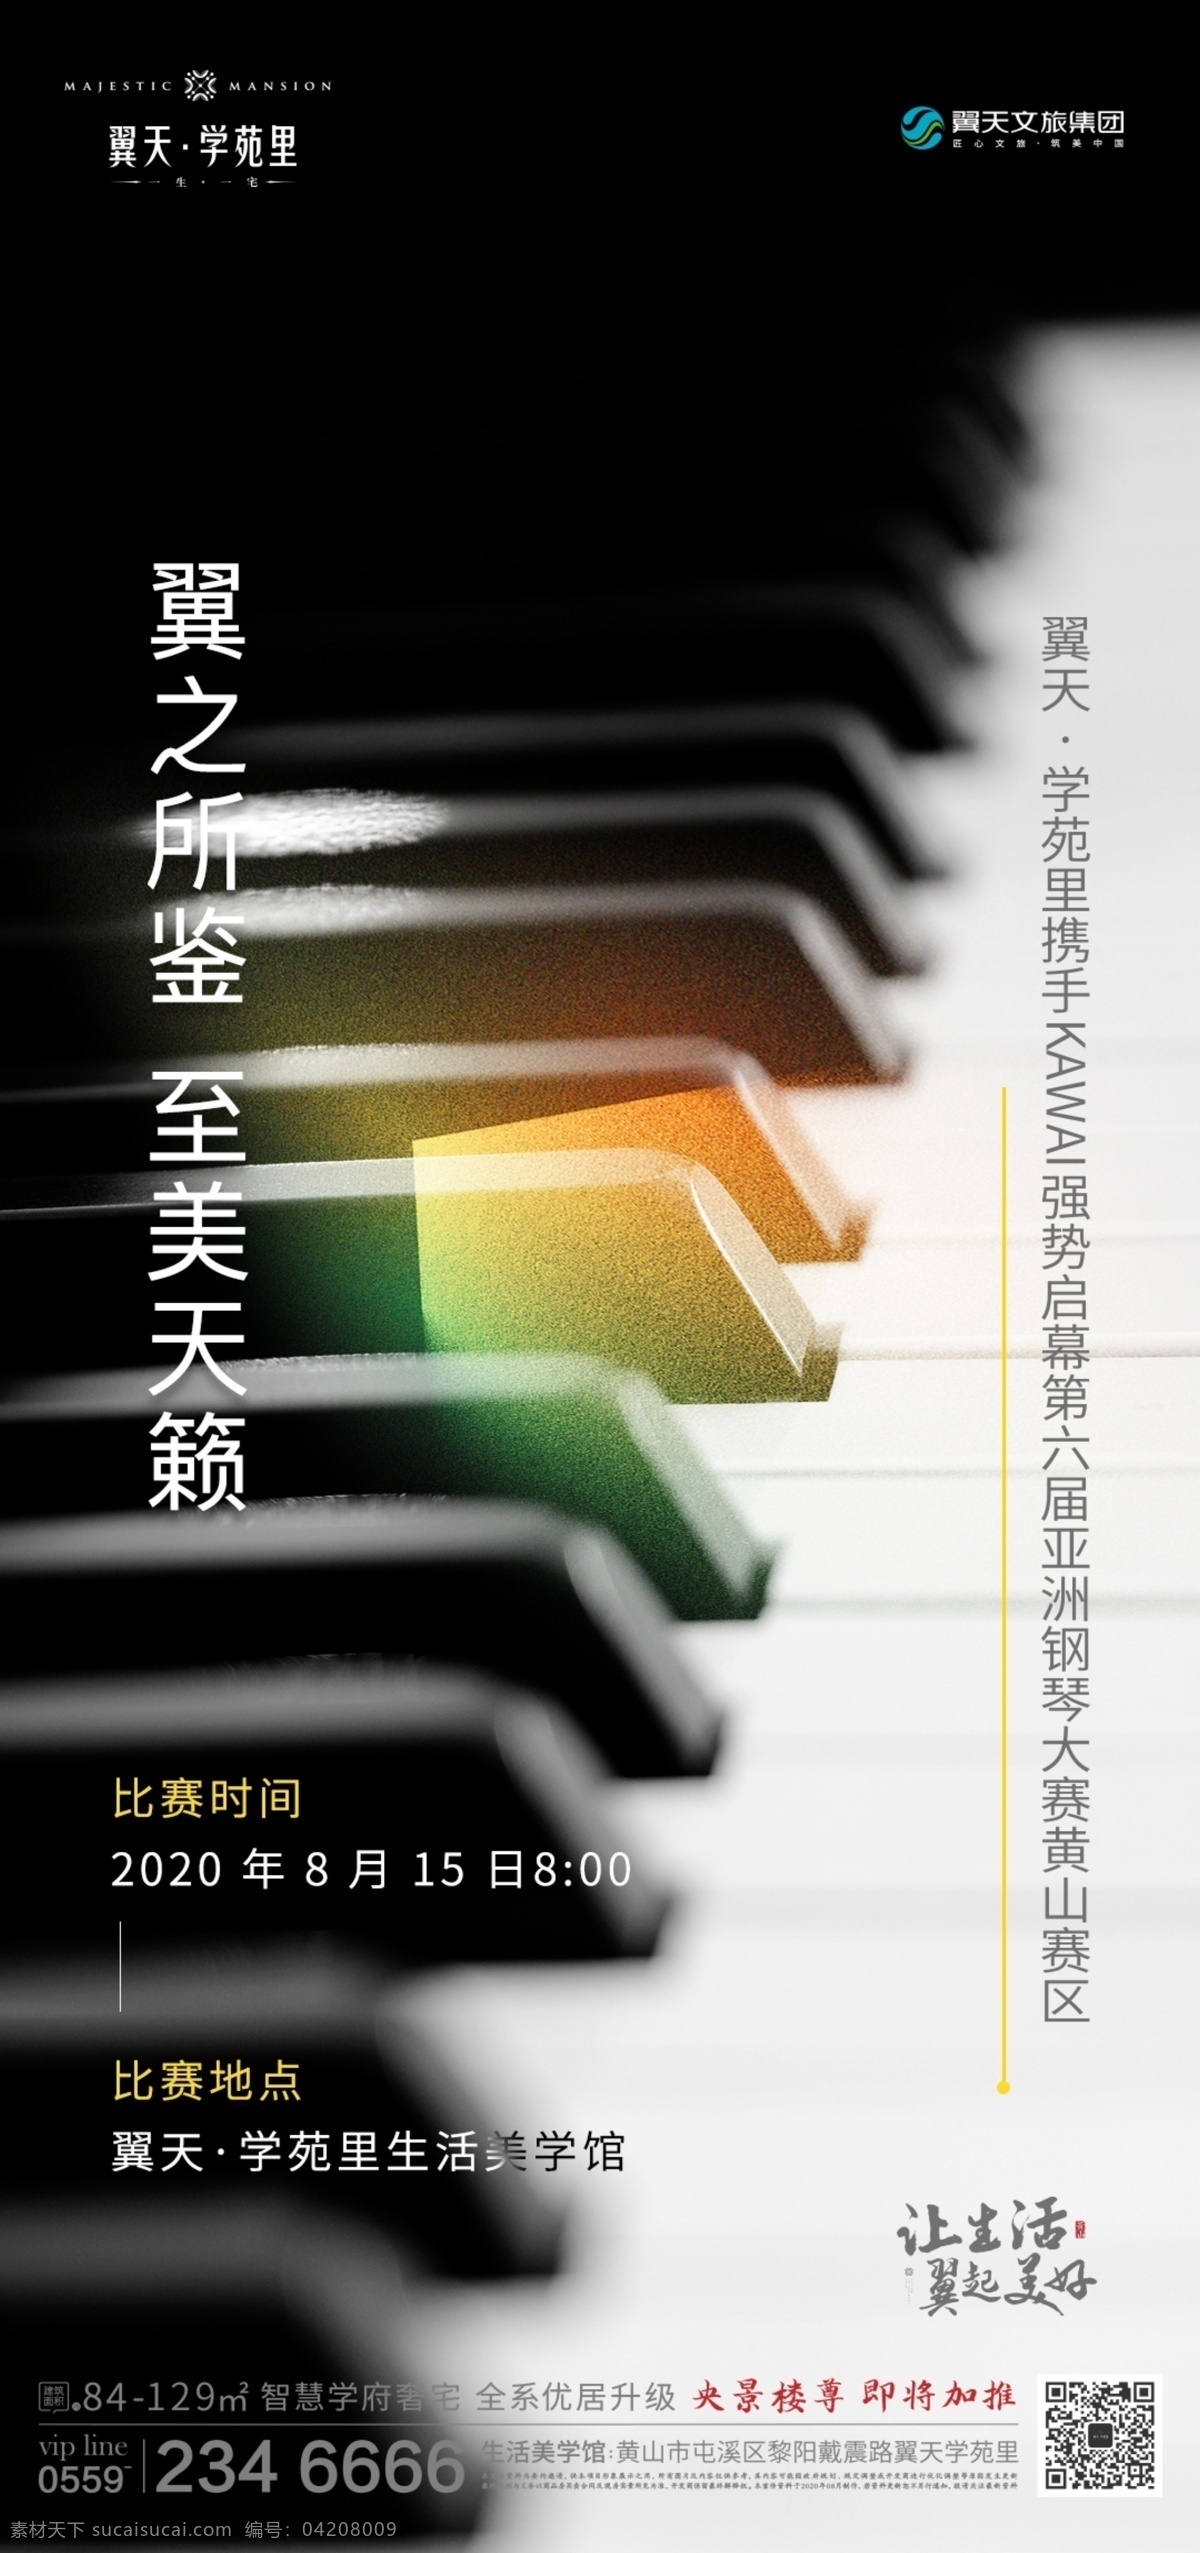 钢琴大赛海报 钢琴 比赛 微信 海报 地产